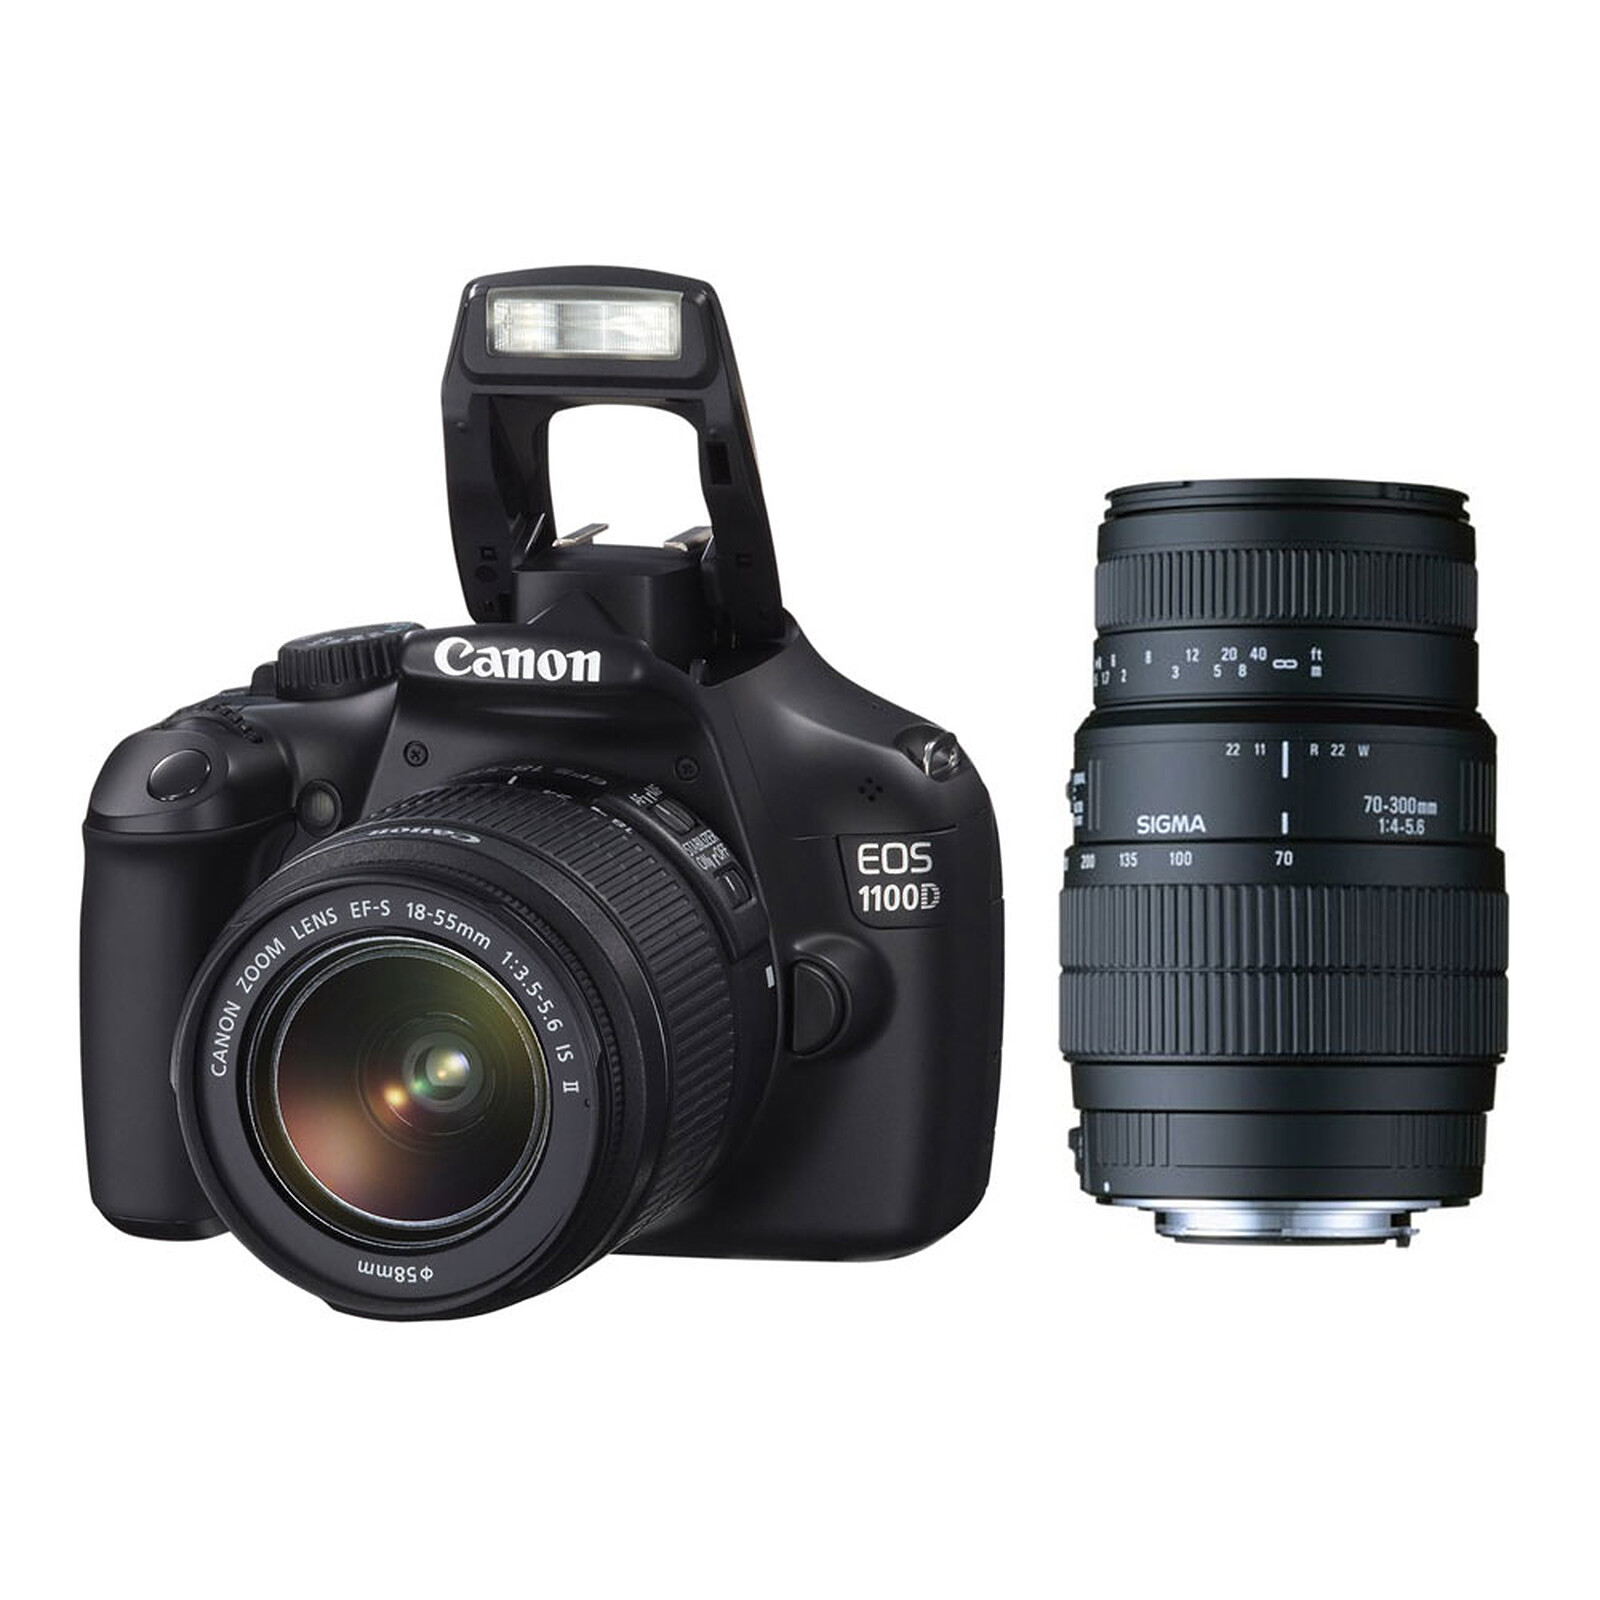  Canon  EOS  1100D  Objectifs 18 55 mm et 70 300mm 